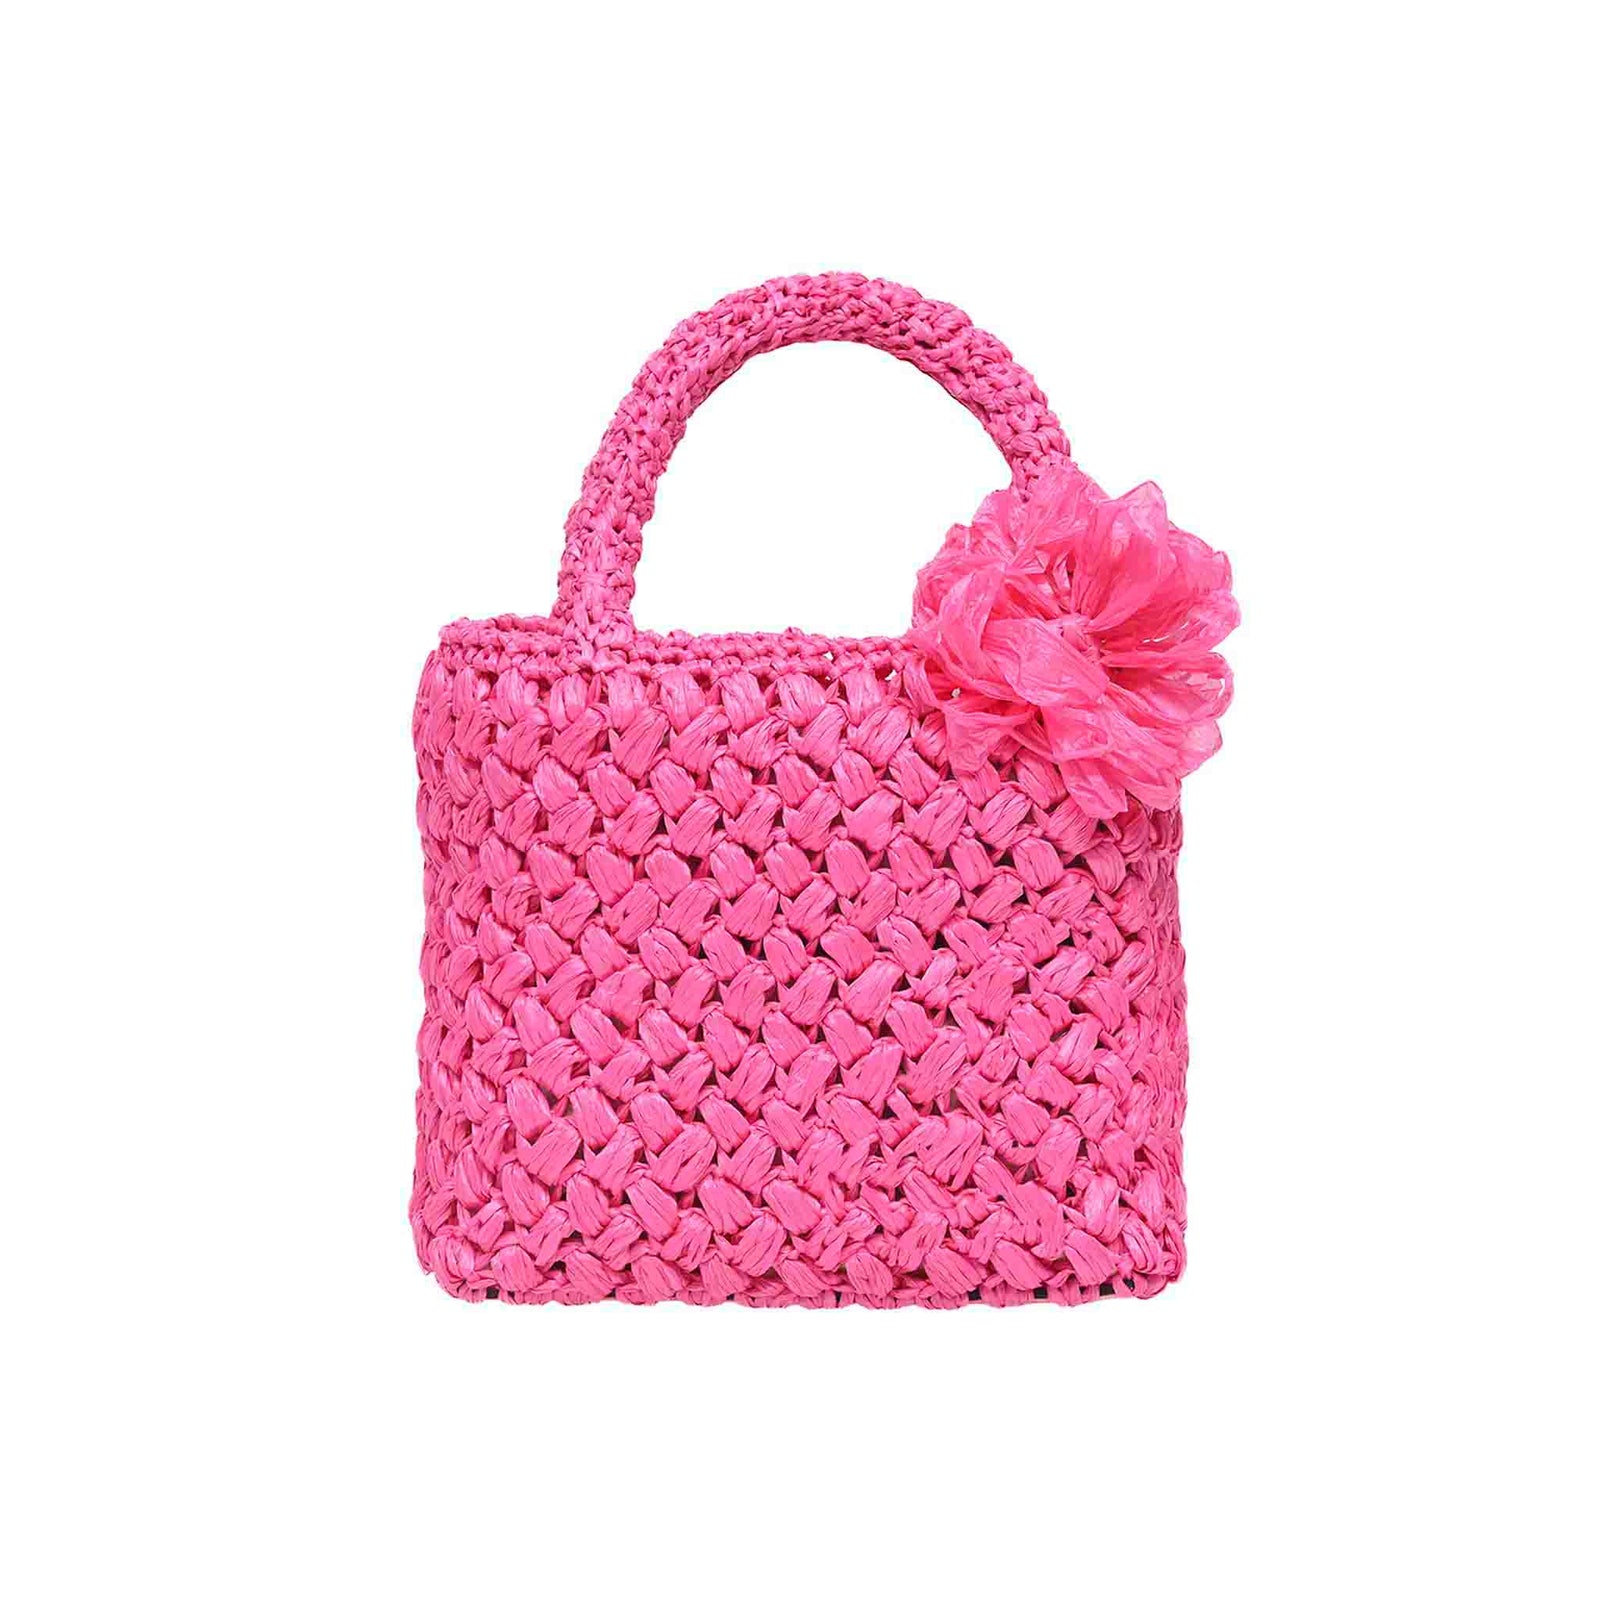 OLYMPIC Women 5Pcs PINK Handbag Set Nylon Top Handle Bag Totes Satchels  Crossbody Shoulder Bags and Purse Clutch - Season Bazaar